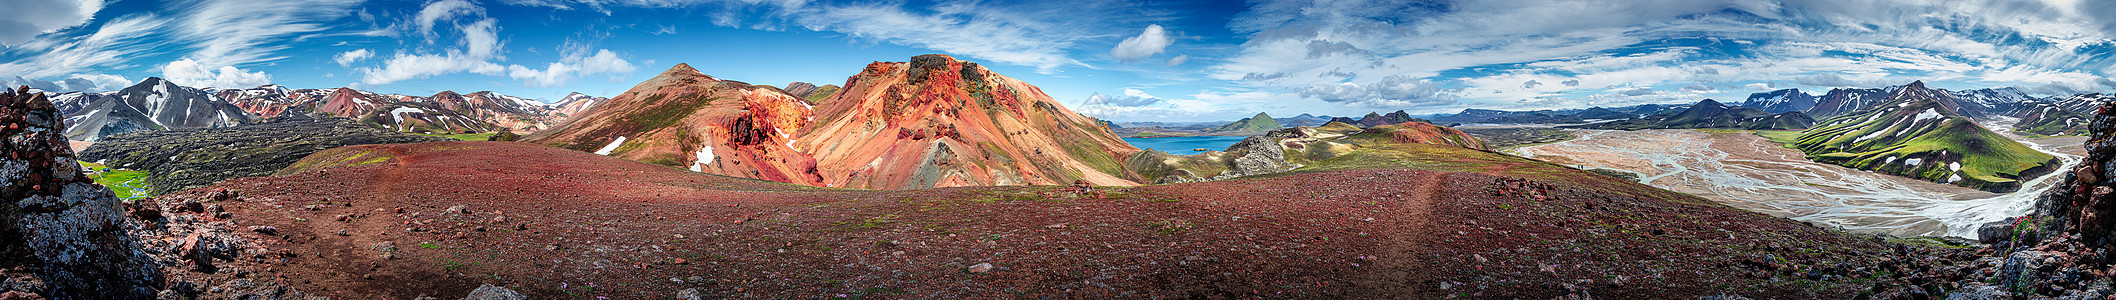 冰岛蓝天五颜六色的彩虹火山山脉 火山 熔岩场和露营地的 360 度全景景观戏剧性首脑旅行地热小路地质学冒险踪迹登山远足图片